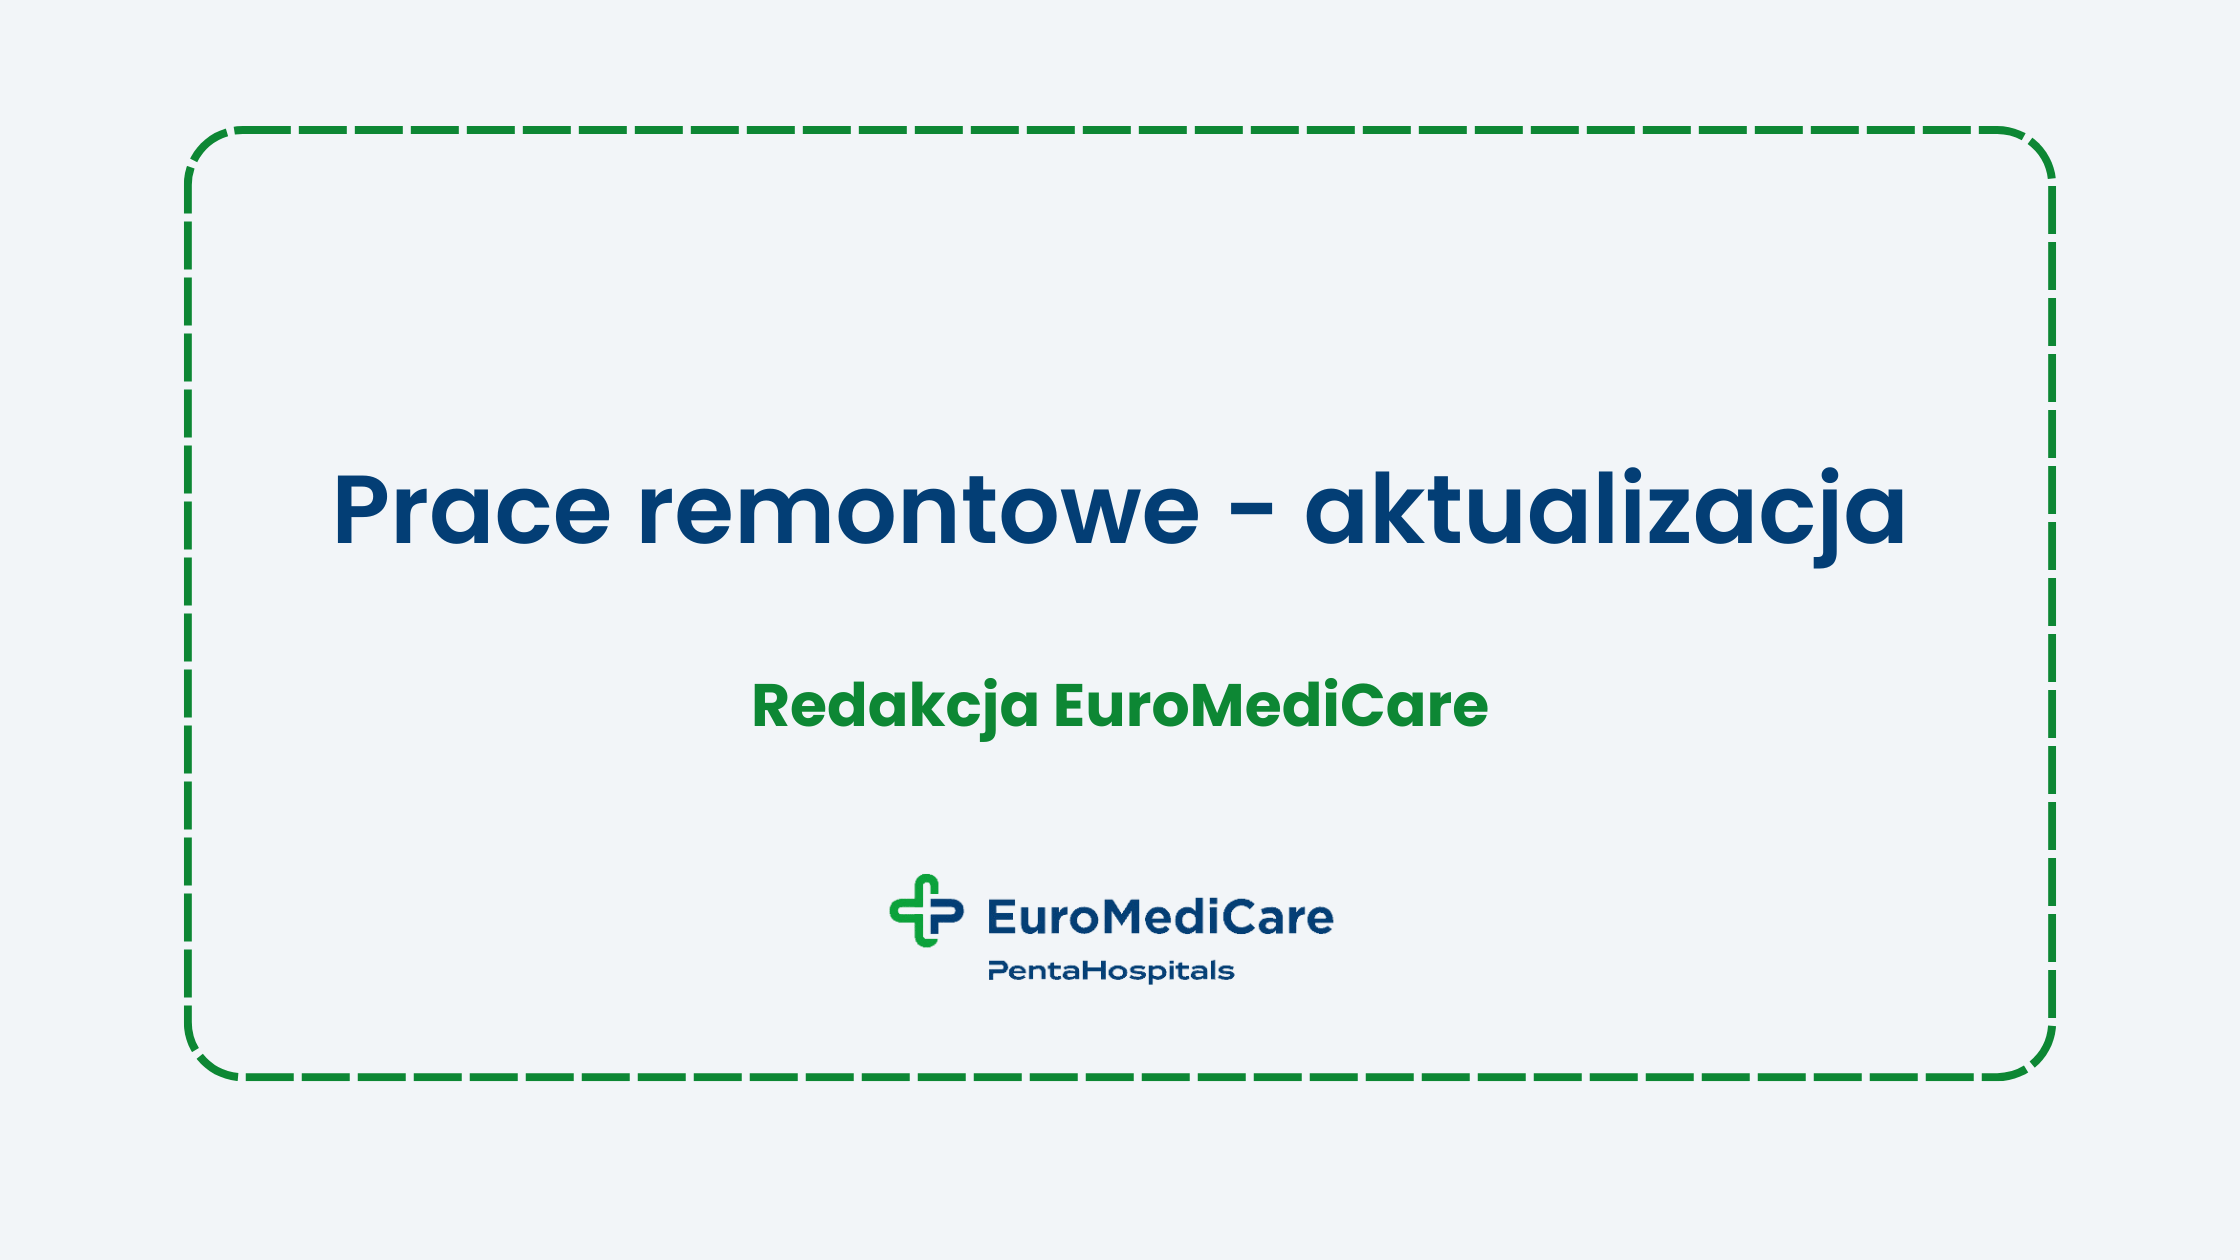 Prace remontowe - aktualizacja - aktualności euromedicare.pl